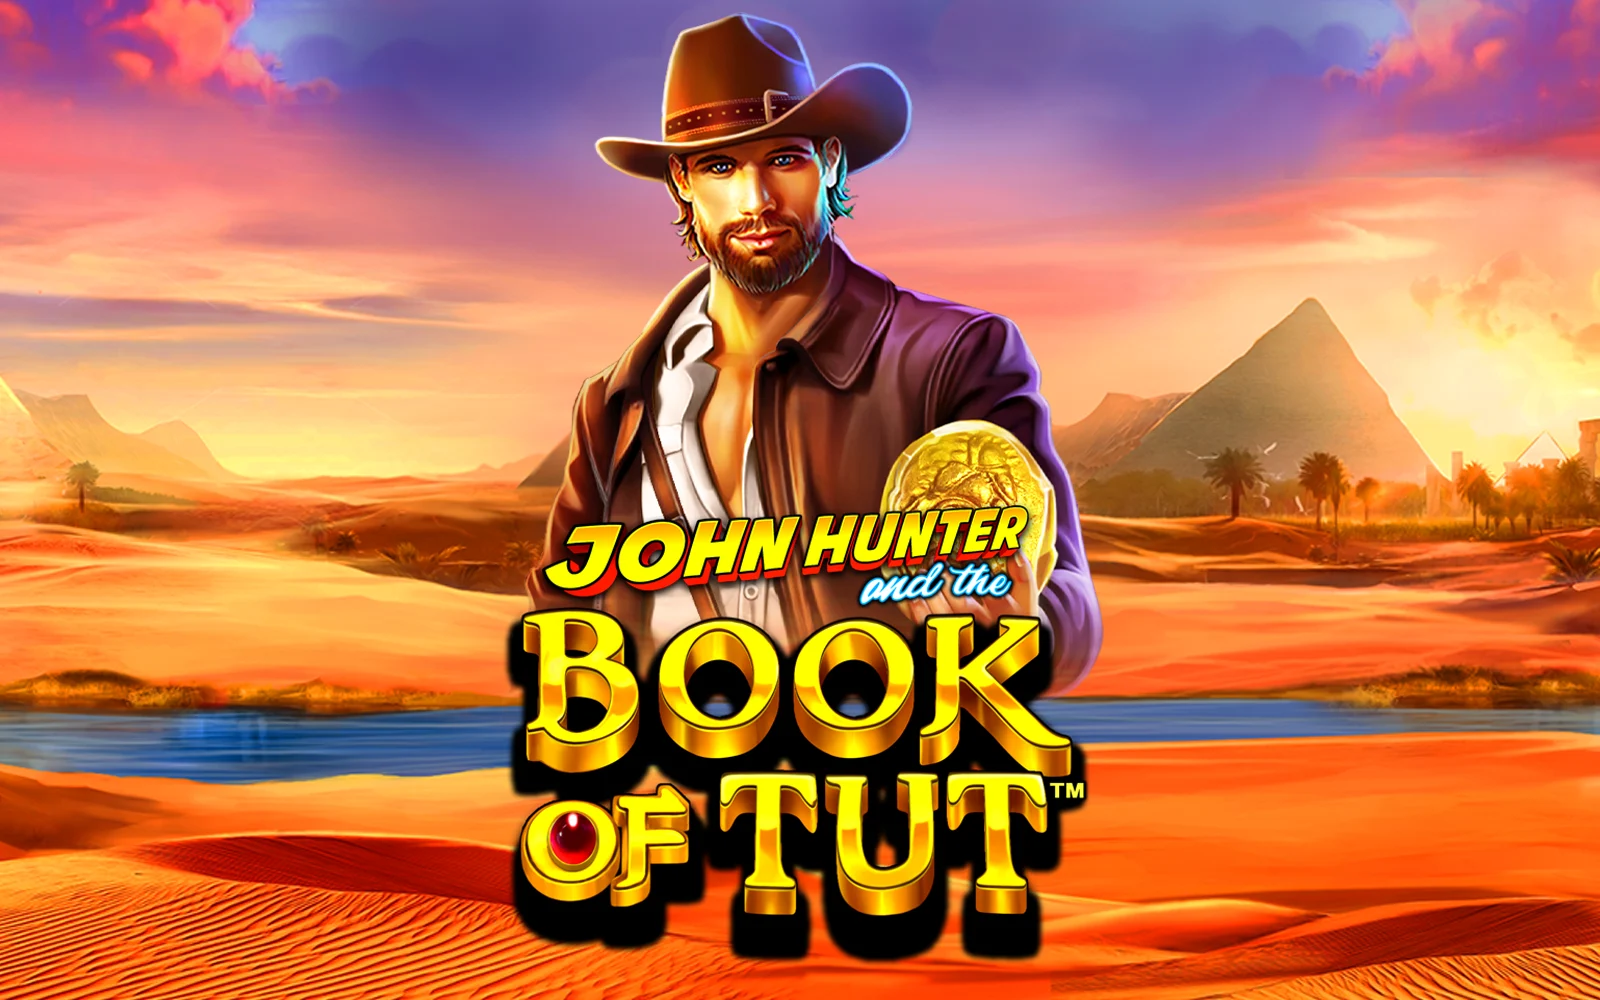 Jogue John Hunter and the Book of Tut™ no casino online Starcasino.be 